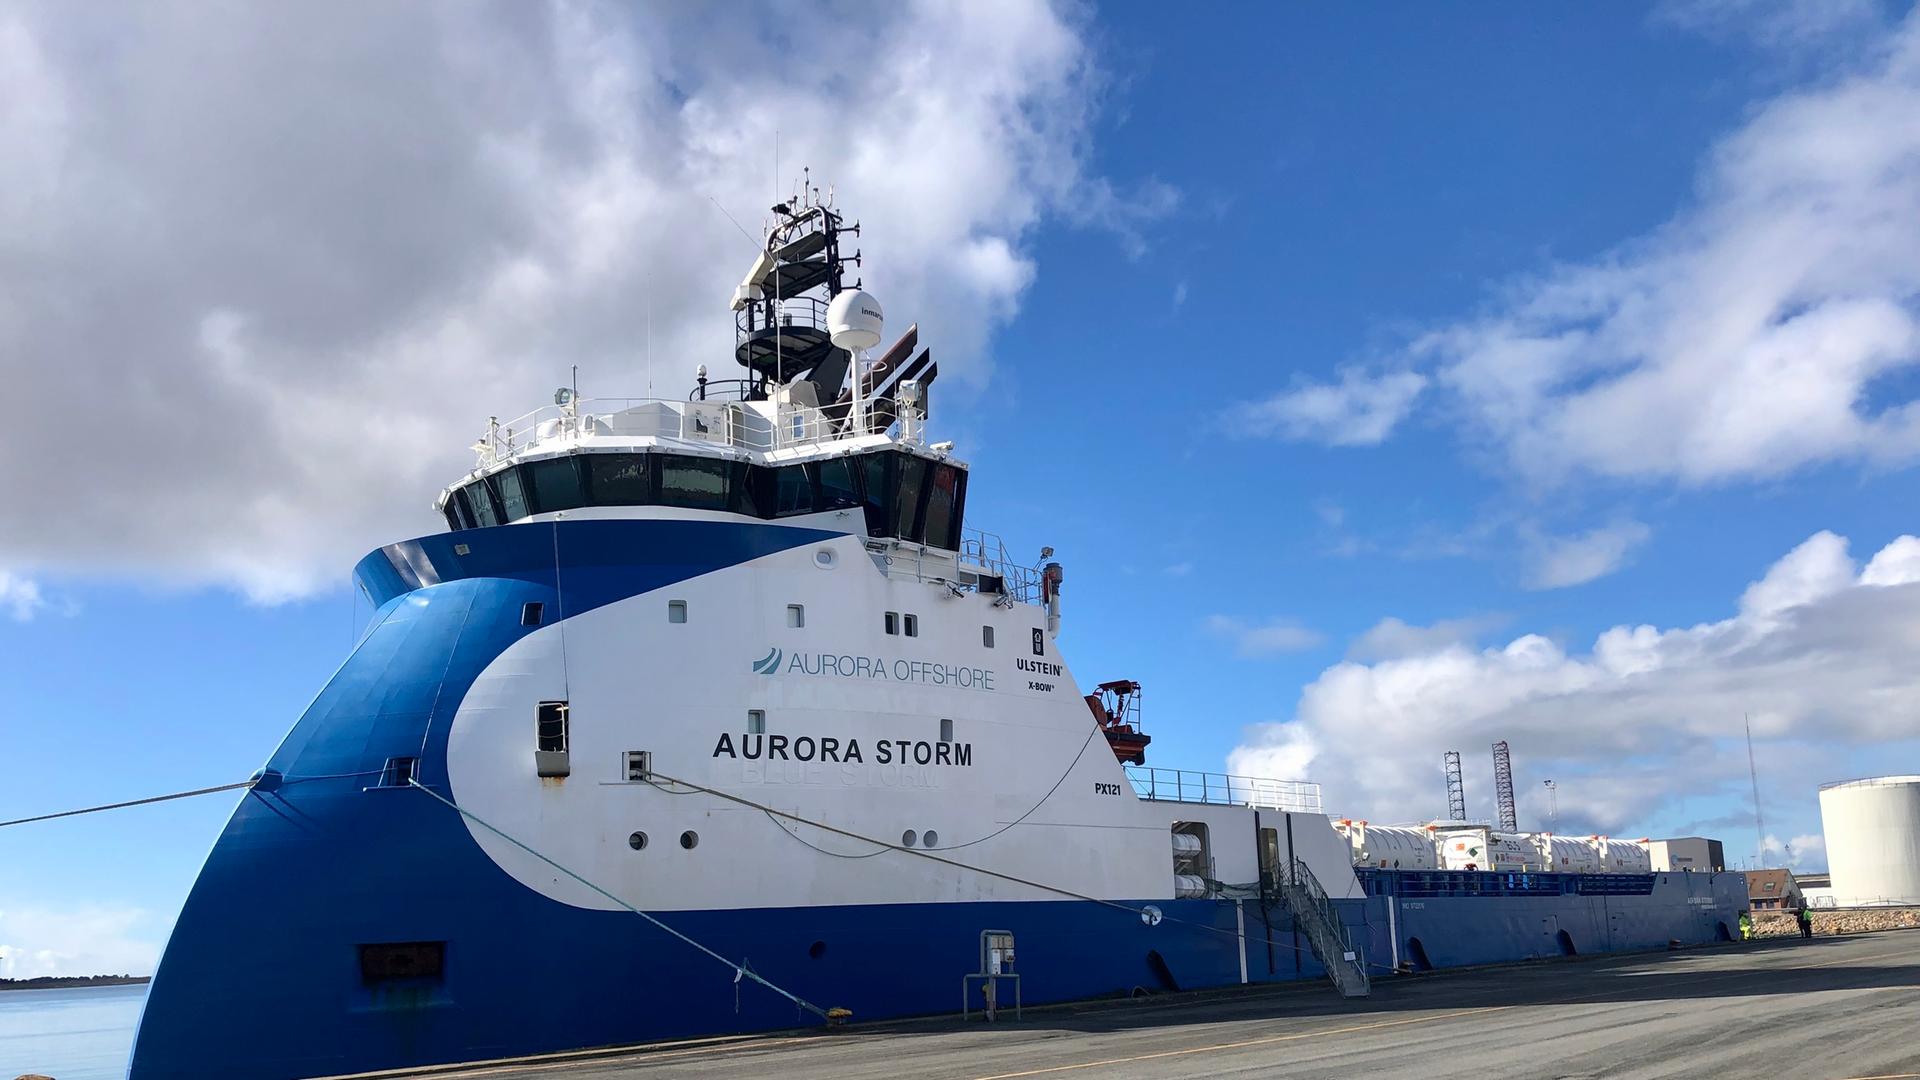 Die "Aurora Storm" liegt im Hafen. Das Schiff transportiert CO2 zur Offshore-Plattform Nini-West. Von dort wird es in das ausgeförderte Ãlfeld eingespeist. (zu dpa Â«Erste CO2-Einspeicherung in dänischer Nordsee gestartetÂ»)